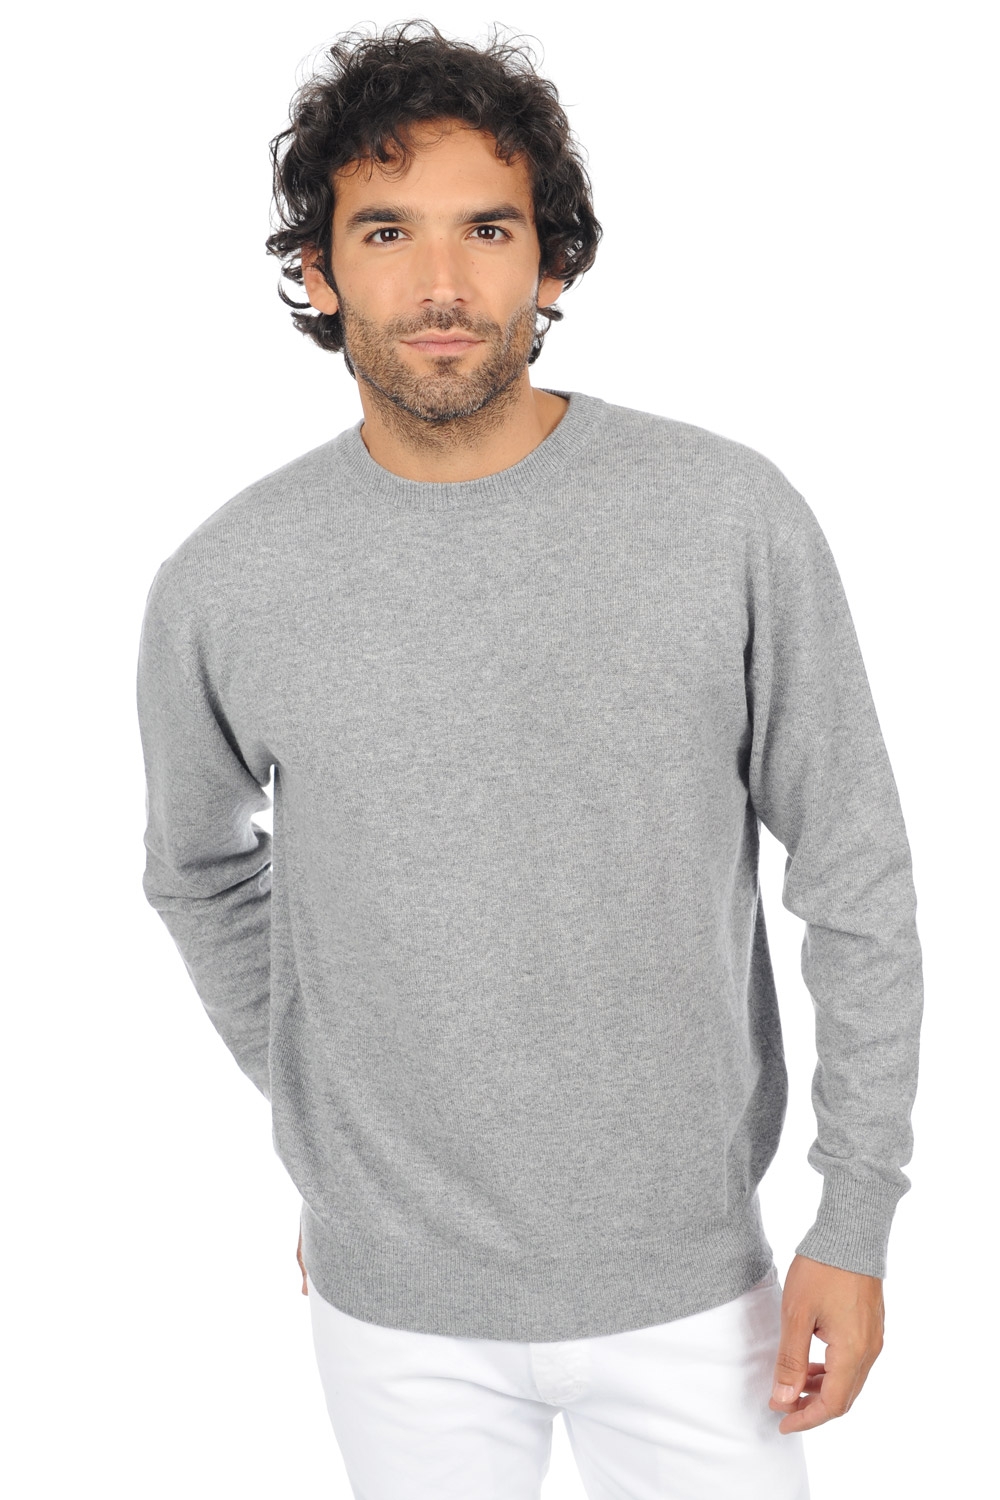 Cashmere men premium sweaters nestor premium premium flanell s